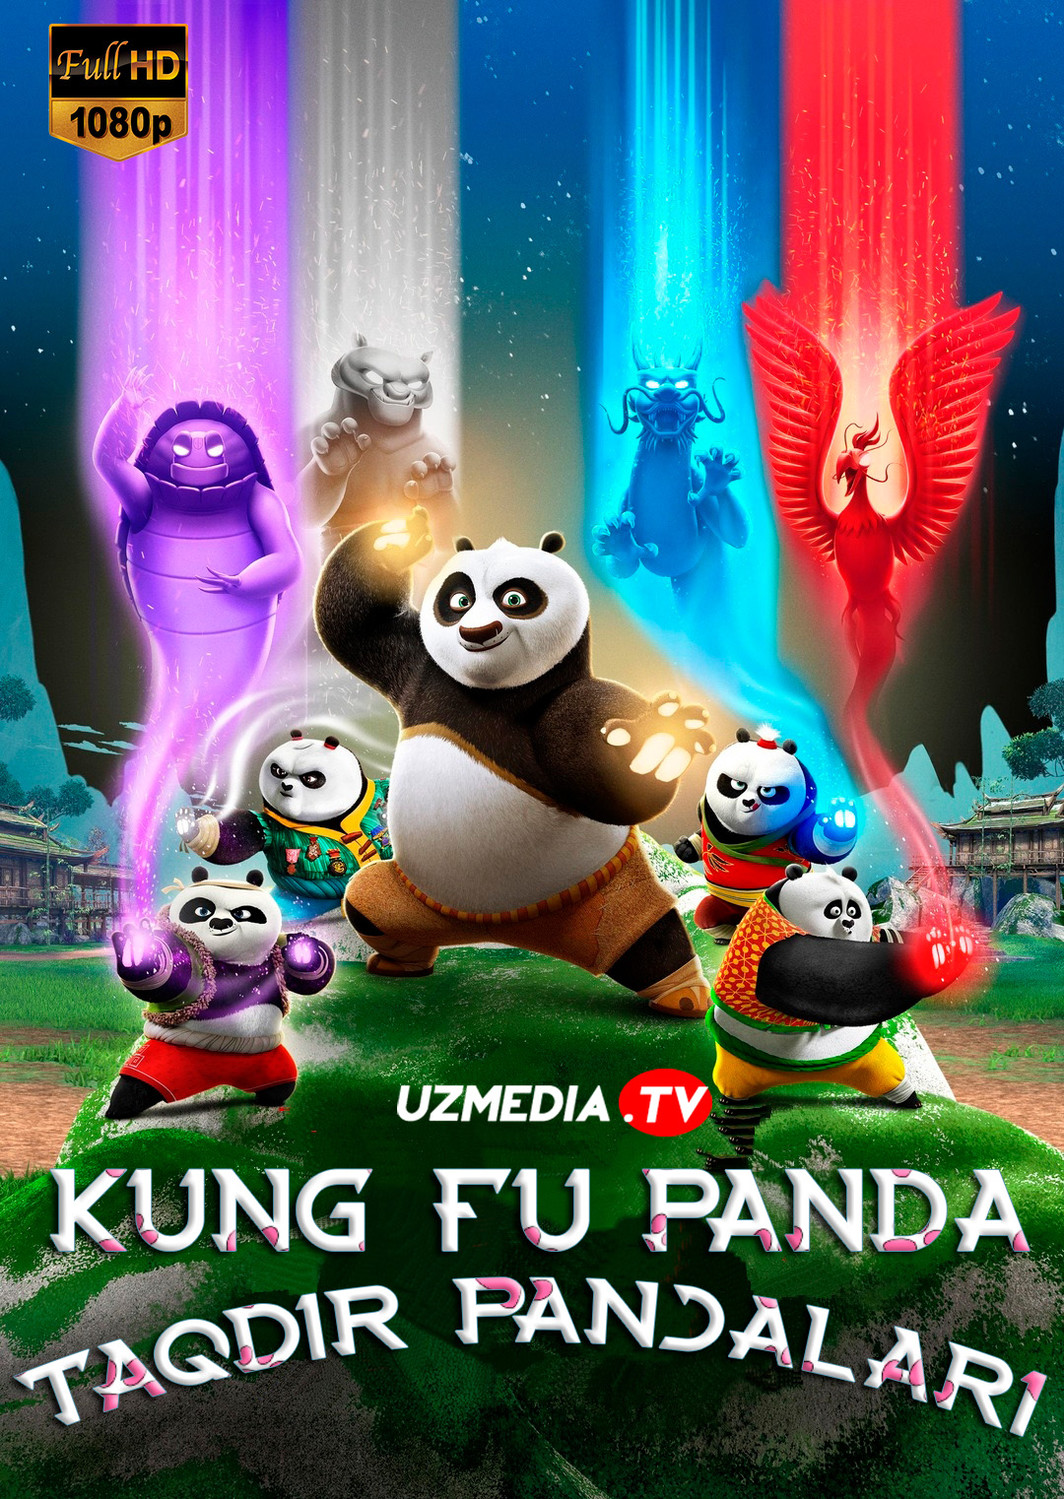 Kung-Fu panda: Taqdir panjalari Multfilm serial Barcha qismlar Uzbek tilida O'zbekcha 2019 tarjima multserial Full HD skachat